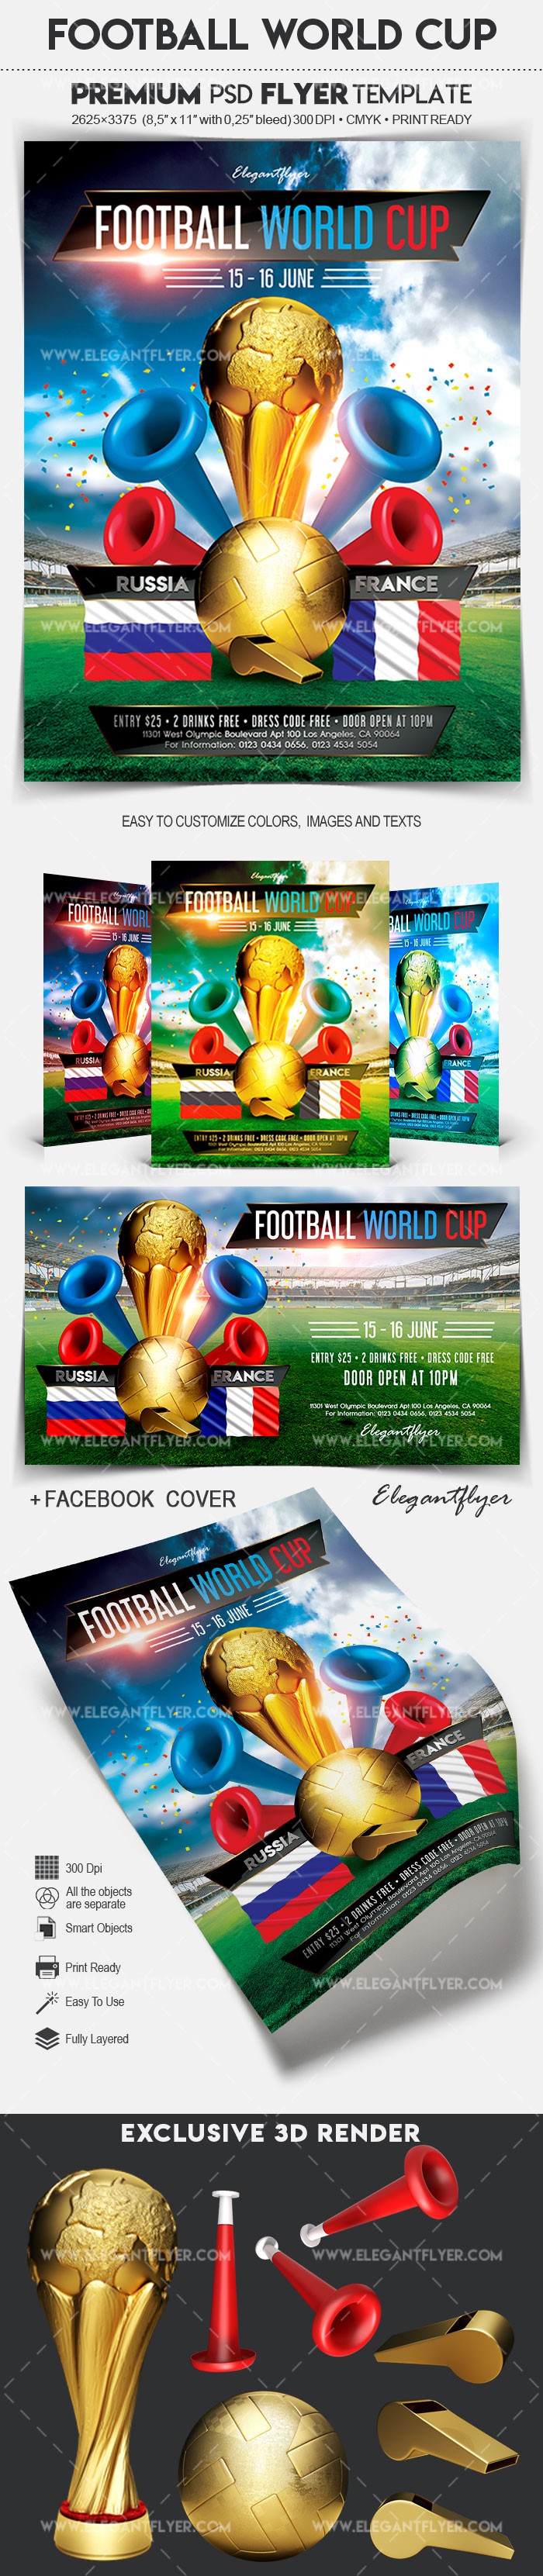 Copa do Mundo de Futebol by ElegantFlyer